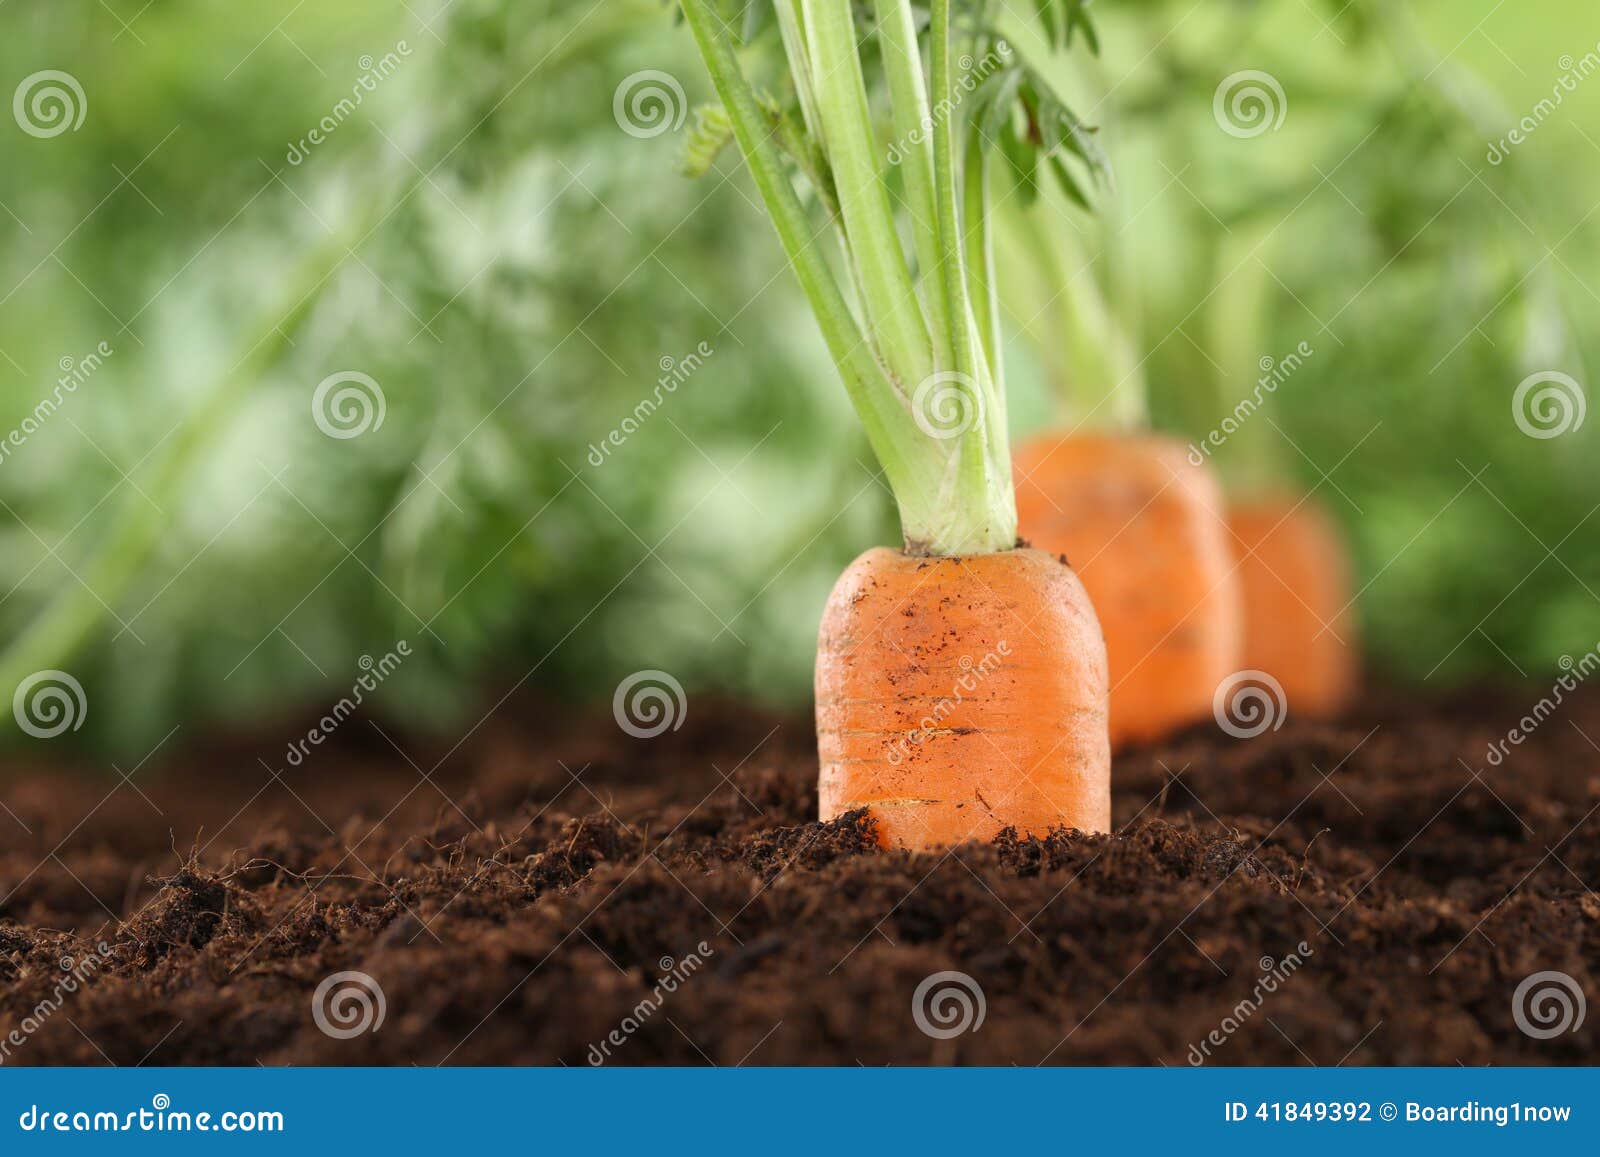 healthy eating carrots in vegetable garden